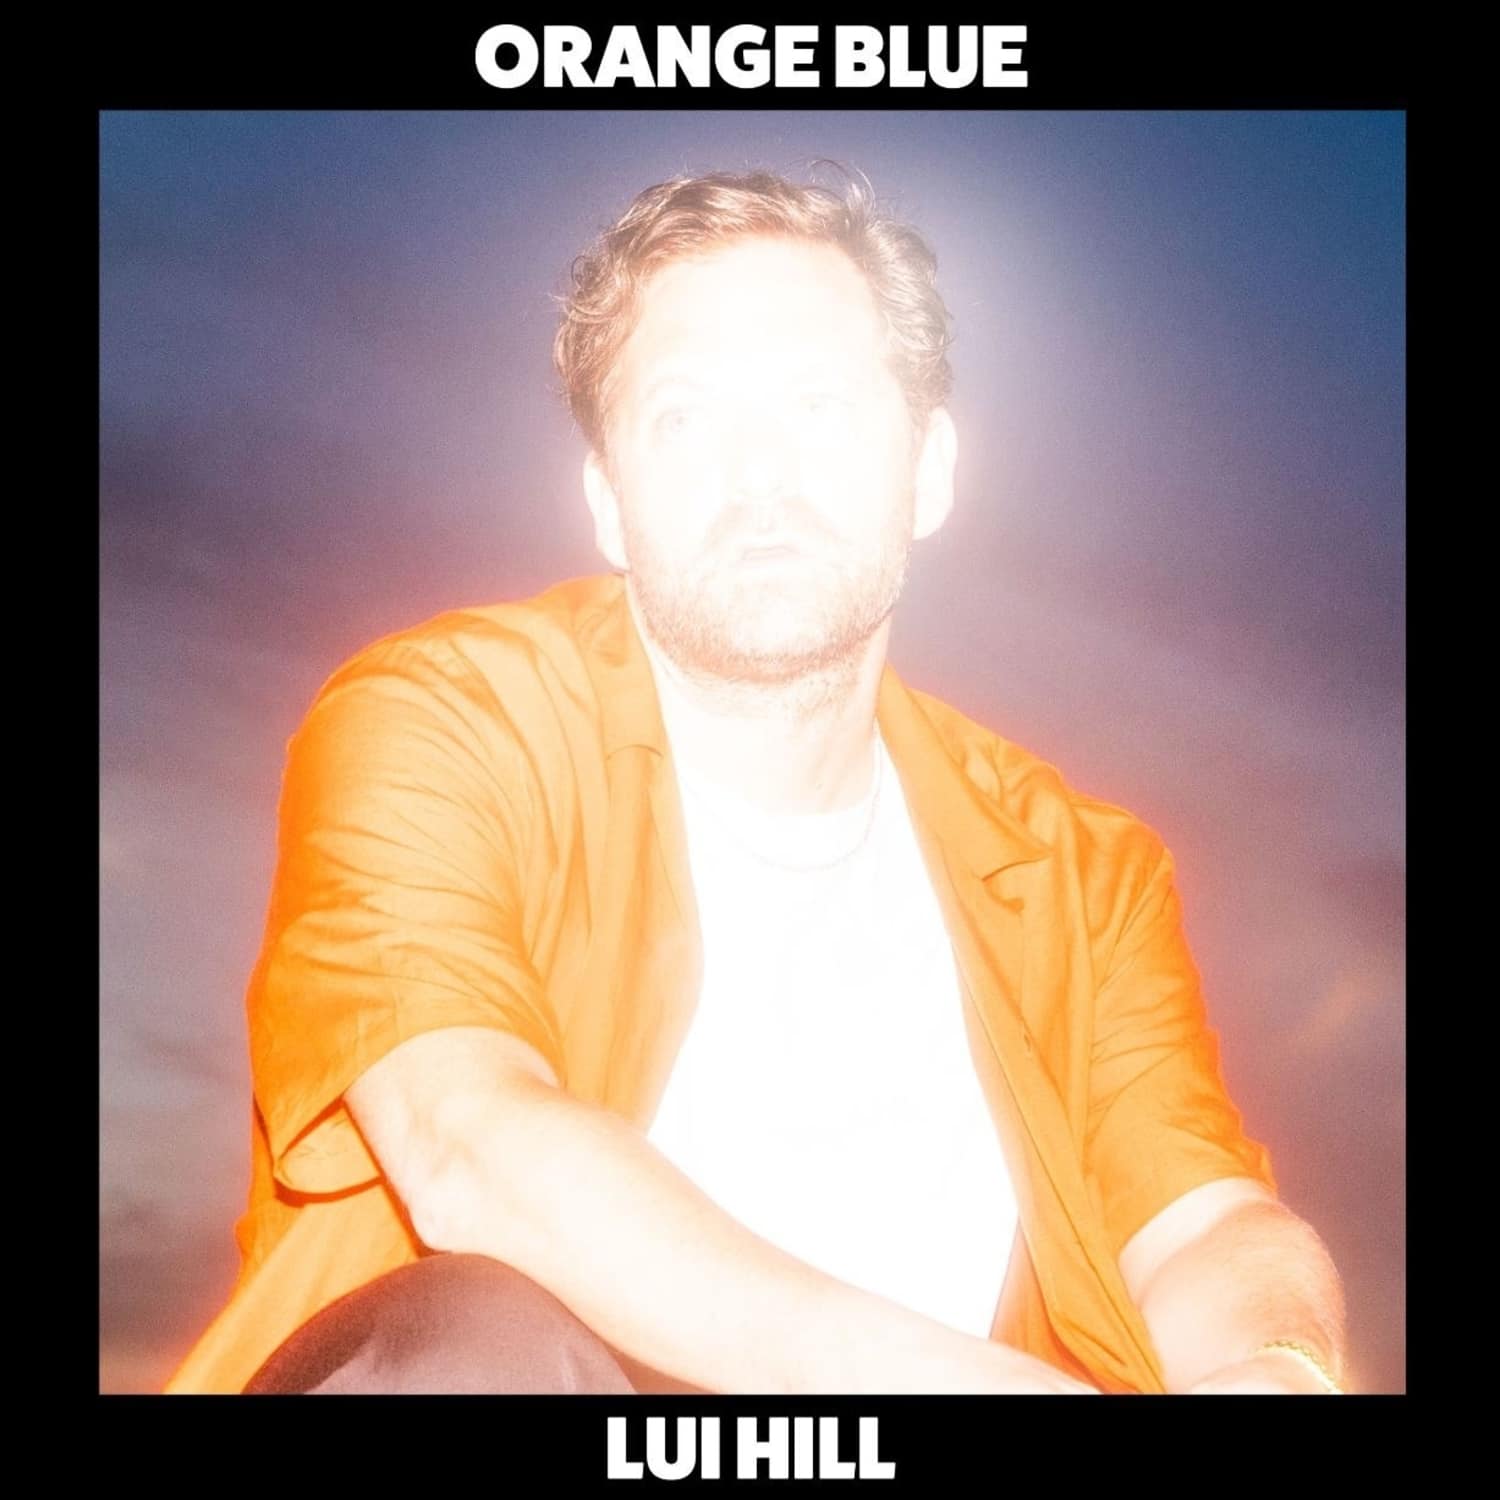 Lui Hill - ORANGE BLUE 